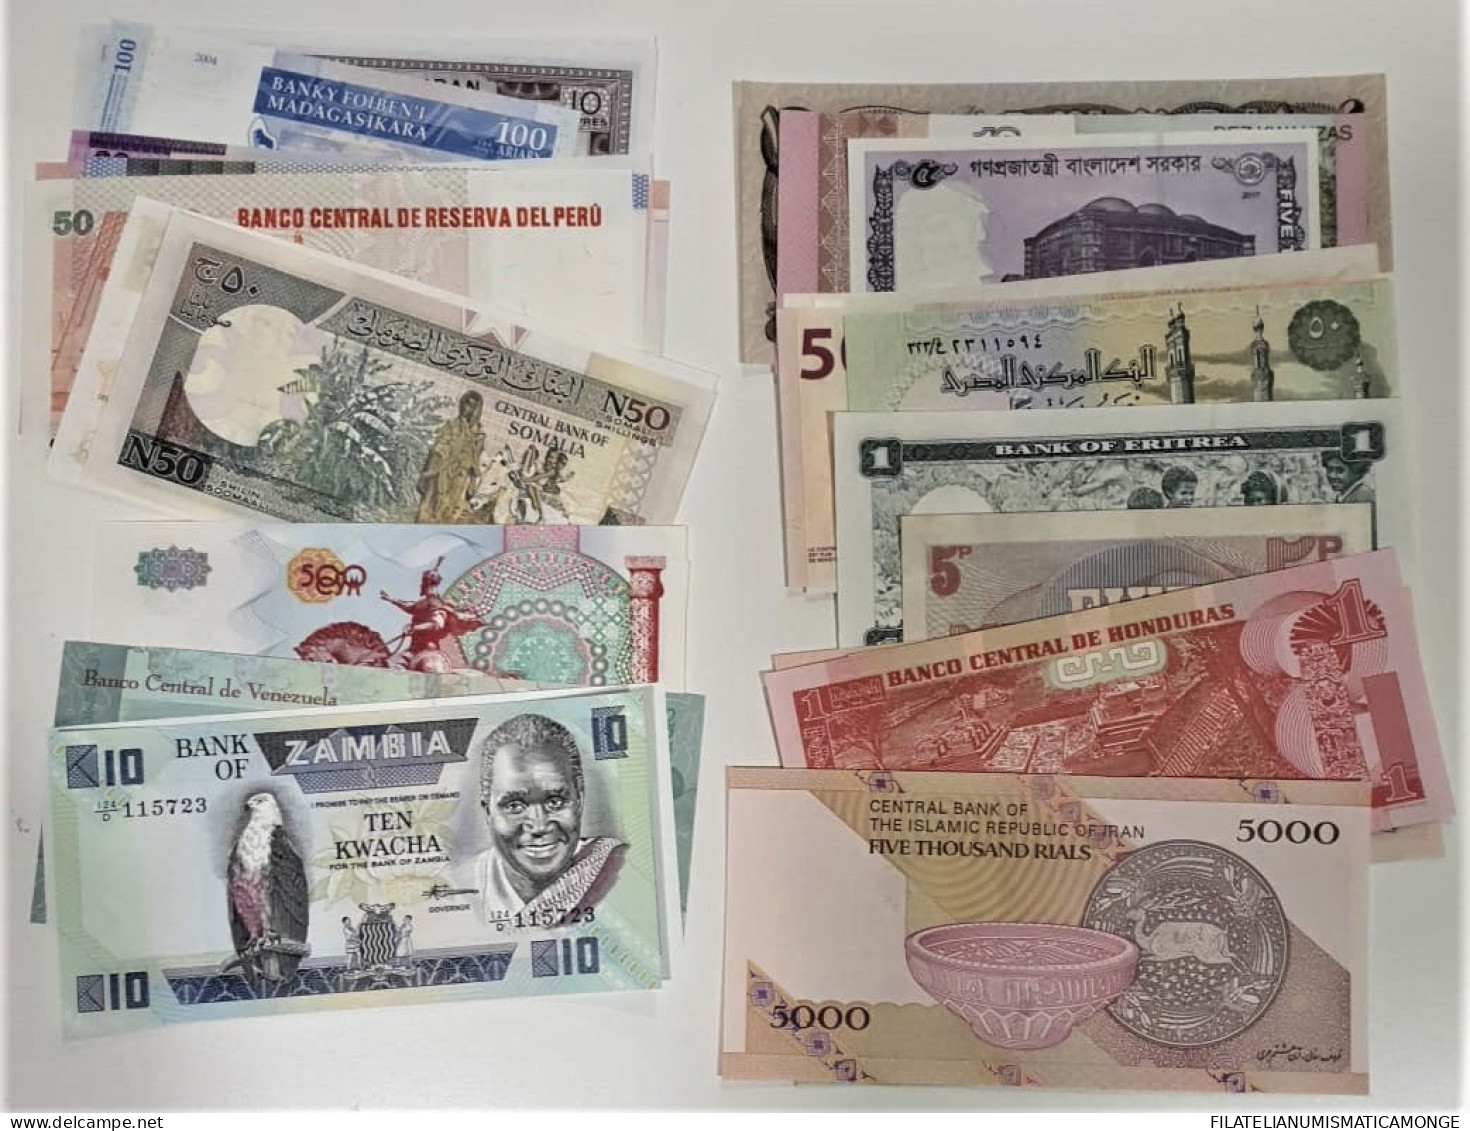  Offer - Lot Banknotes - Paqueteria  Mundial 50 Billetes Diferentes Y De 50 Pai - Vrac - Billets